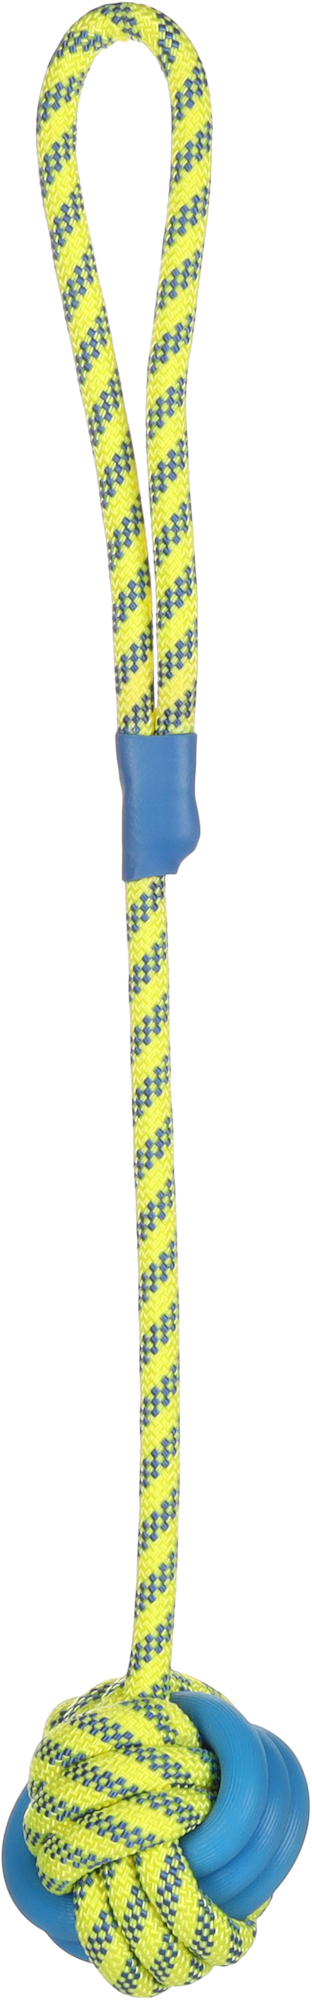 Juguete para perro Tofla bola + cuerda para tirar azul/amarillo de caucho y nylon resistente